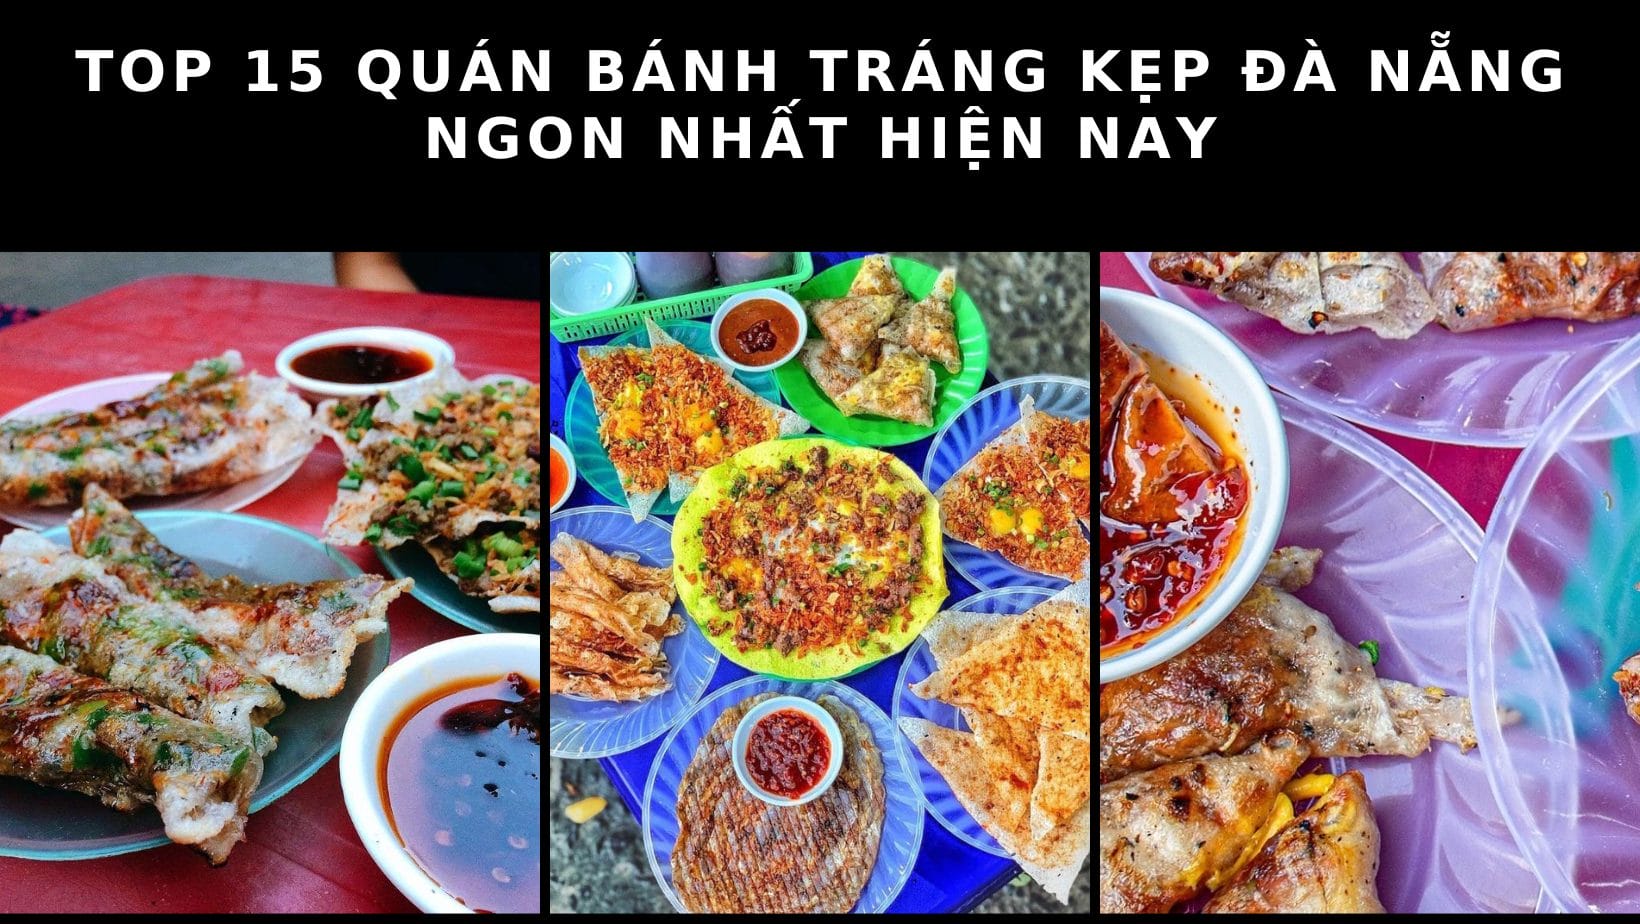 Top 13 quán bún thịt nướng Đà Nẵng ngon, giá rẻ